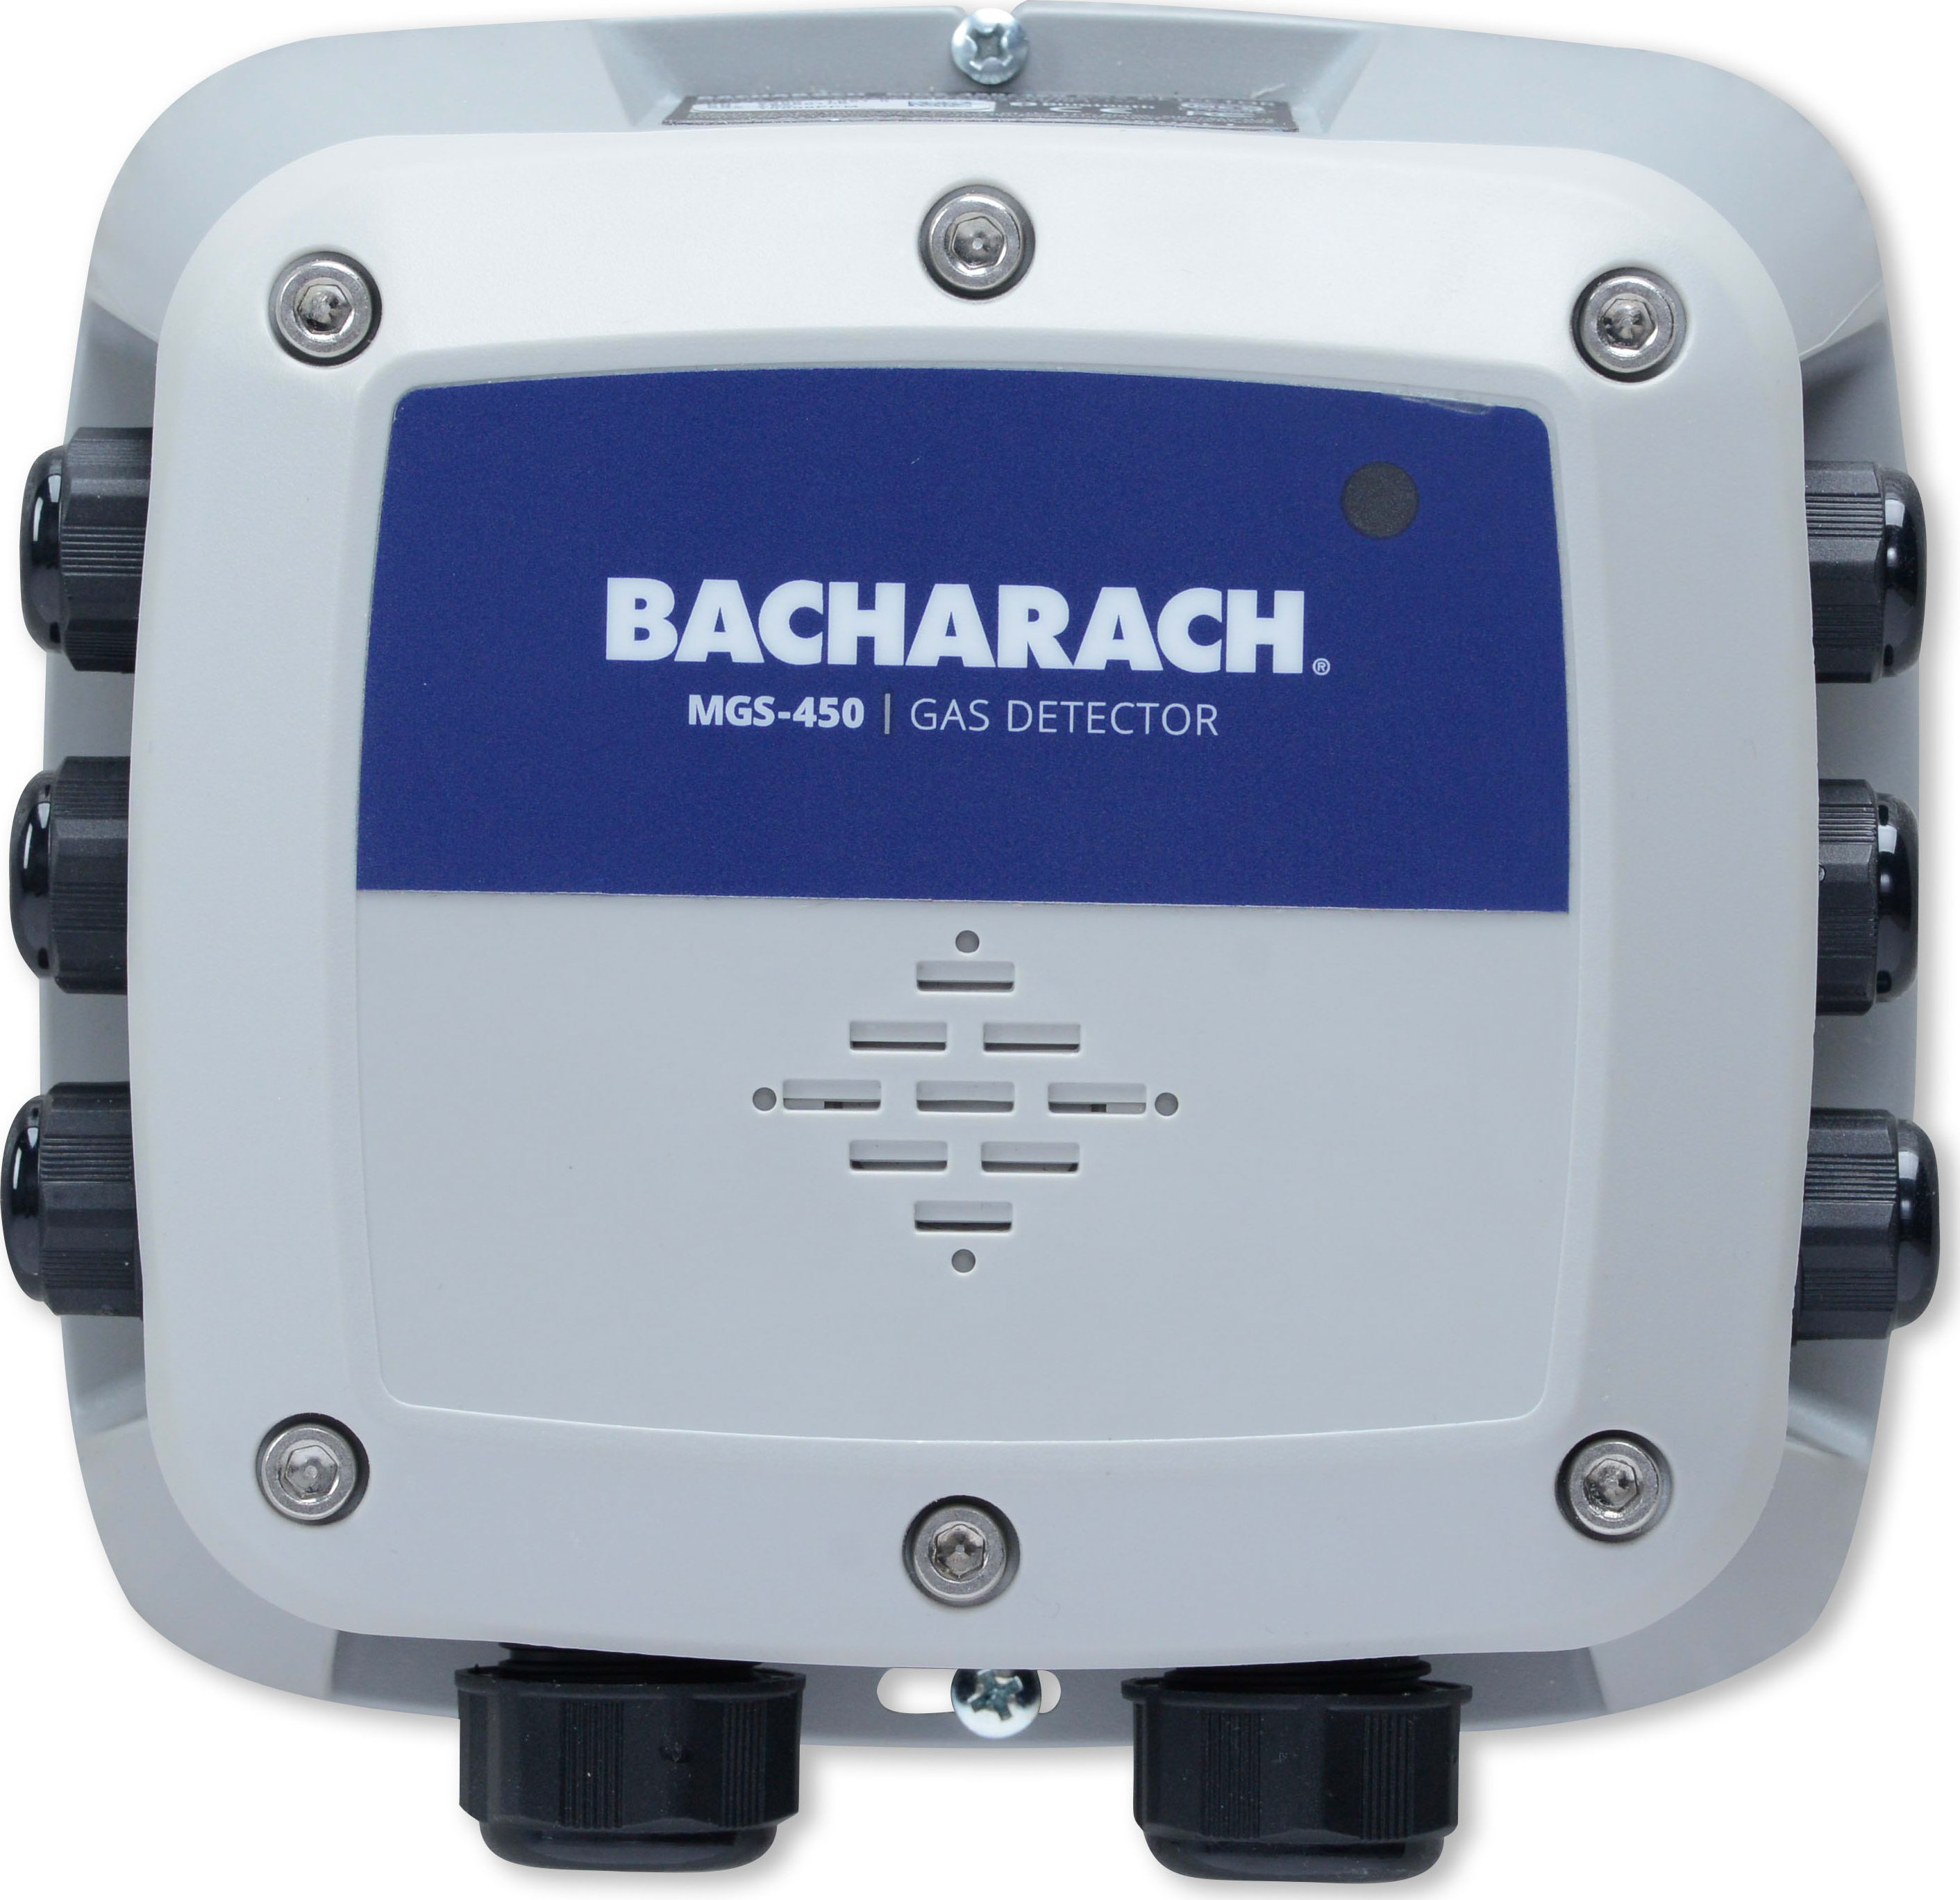 Bacharach 6302-1101 - MGS-450 (IP41) Gas Detector, R134a 0-1,000